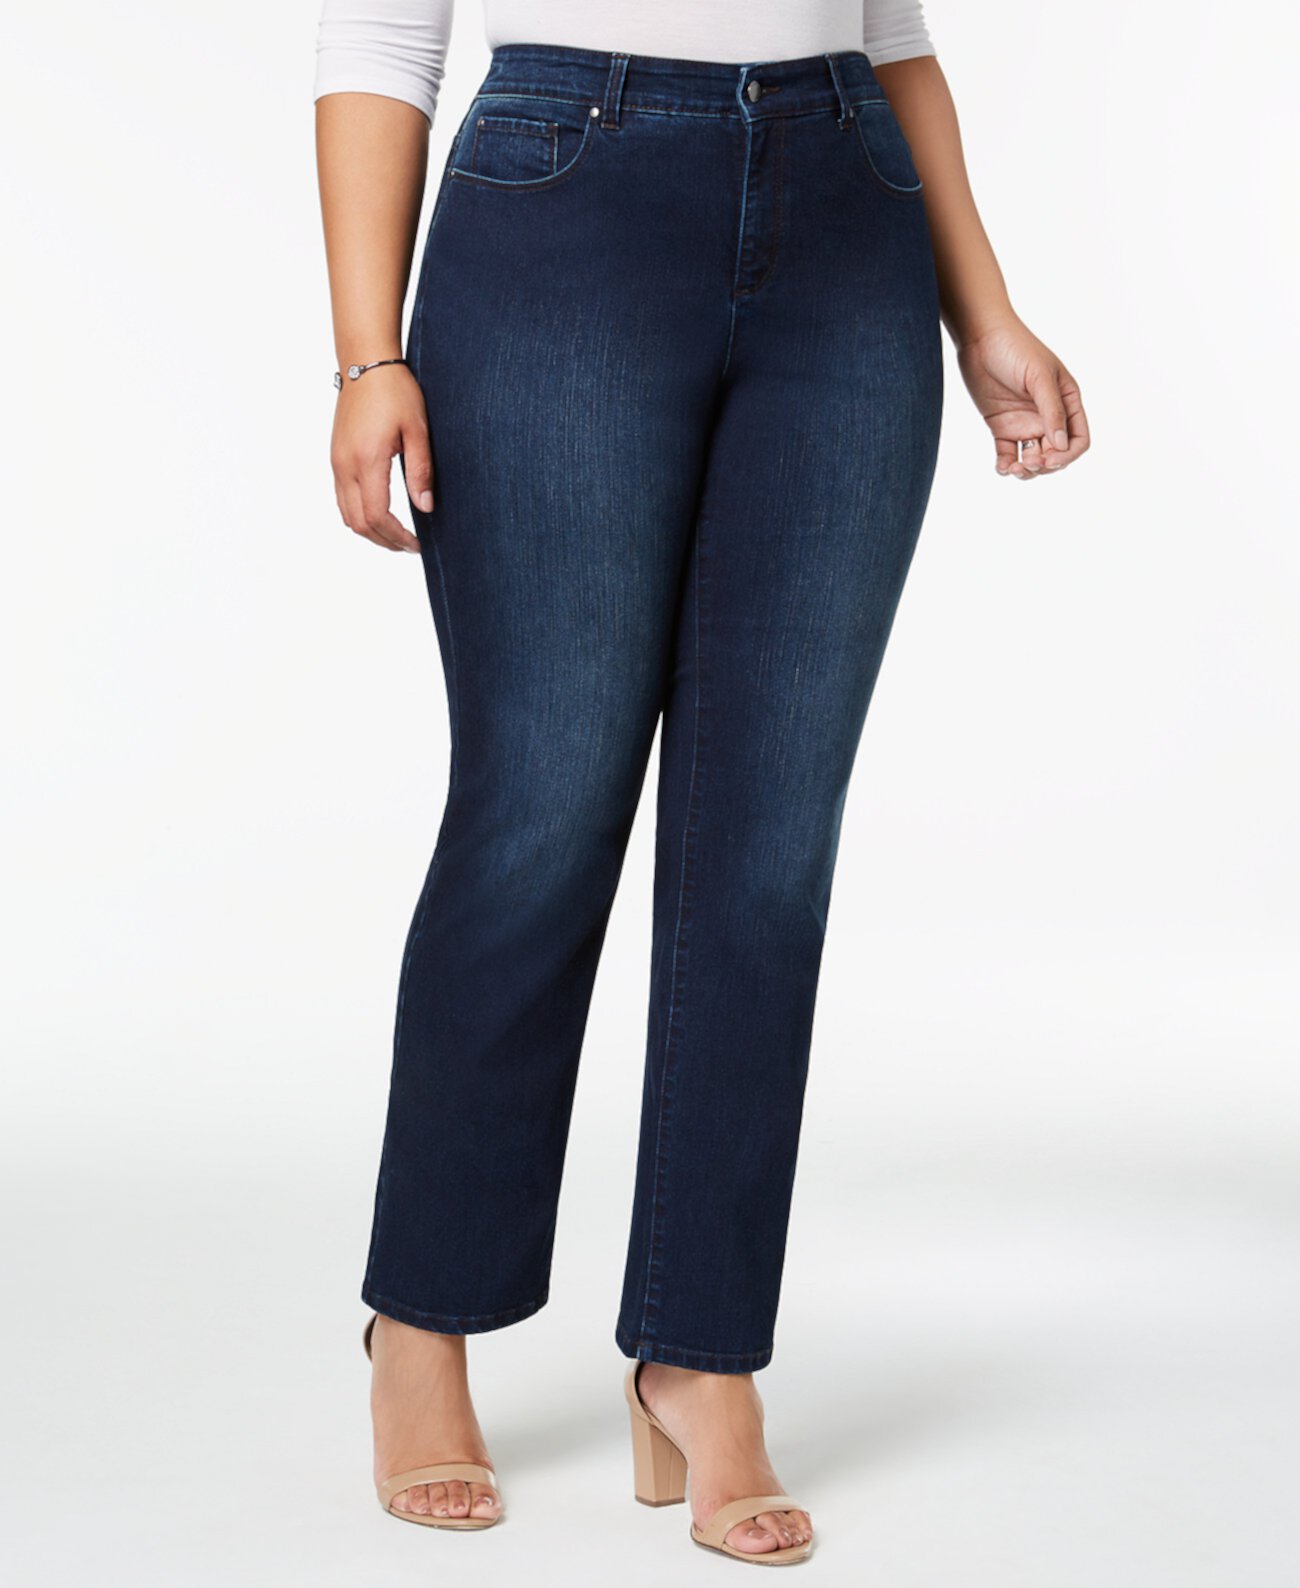 Прямые джинсы Lexington больших размеров и миниатюрных больших размеров с контролем живота, созданные для Macy's Charter Club